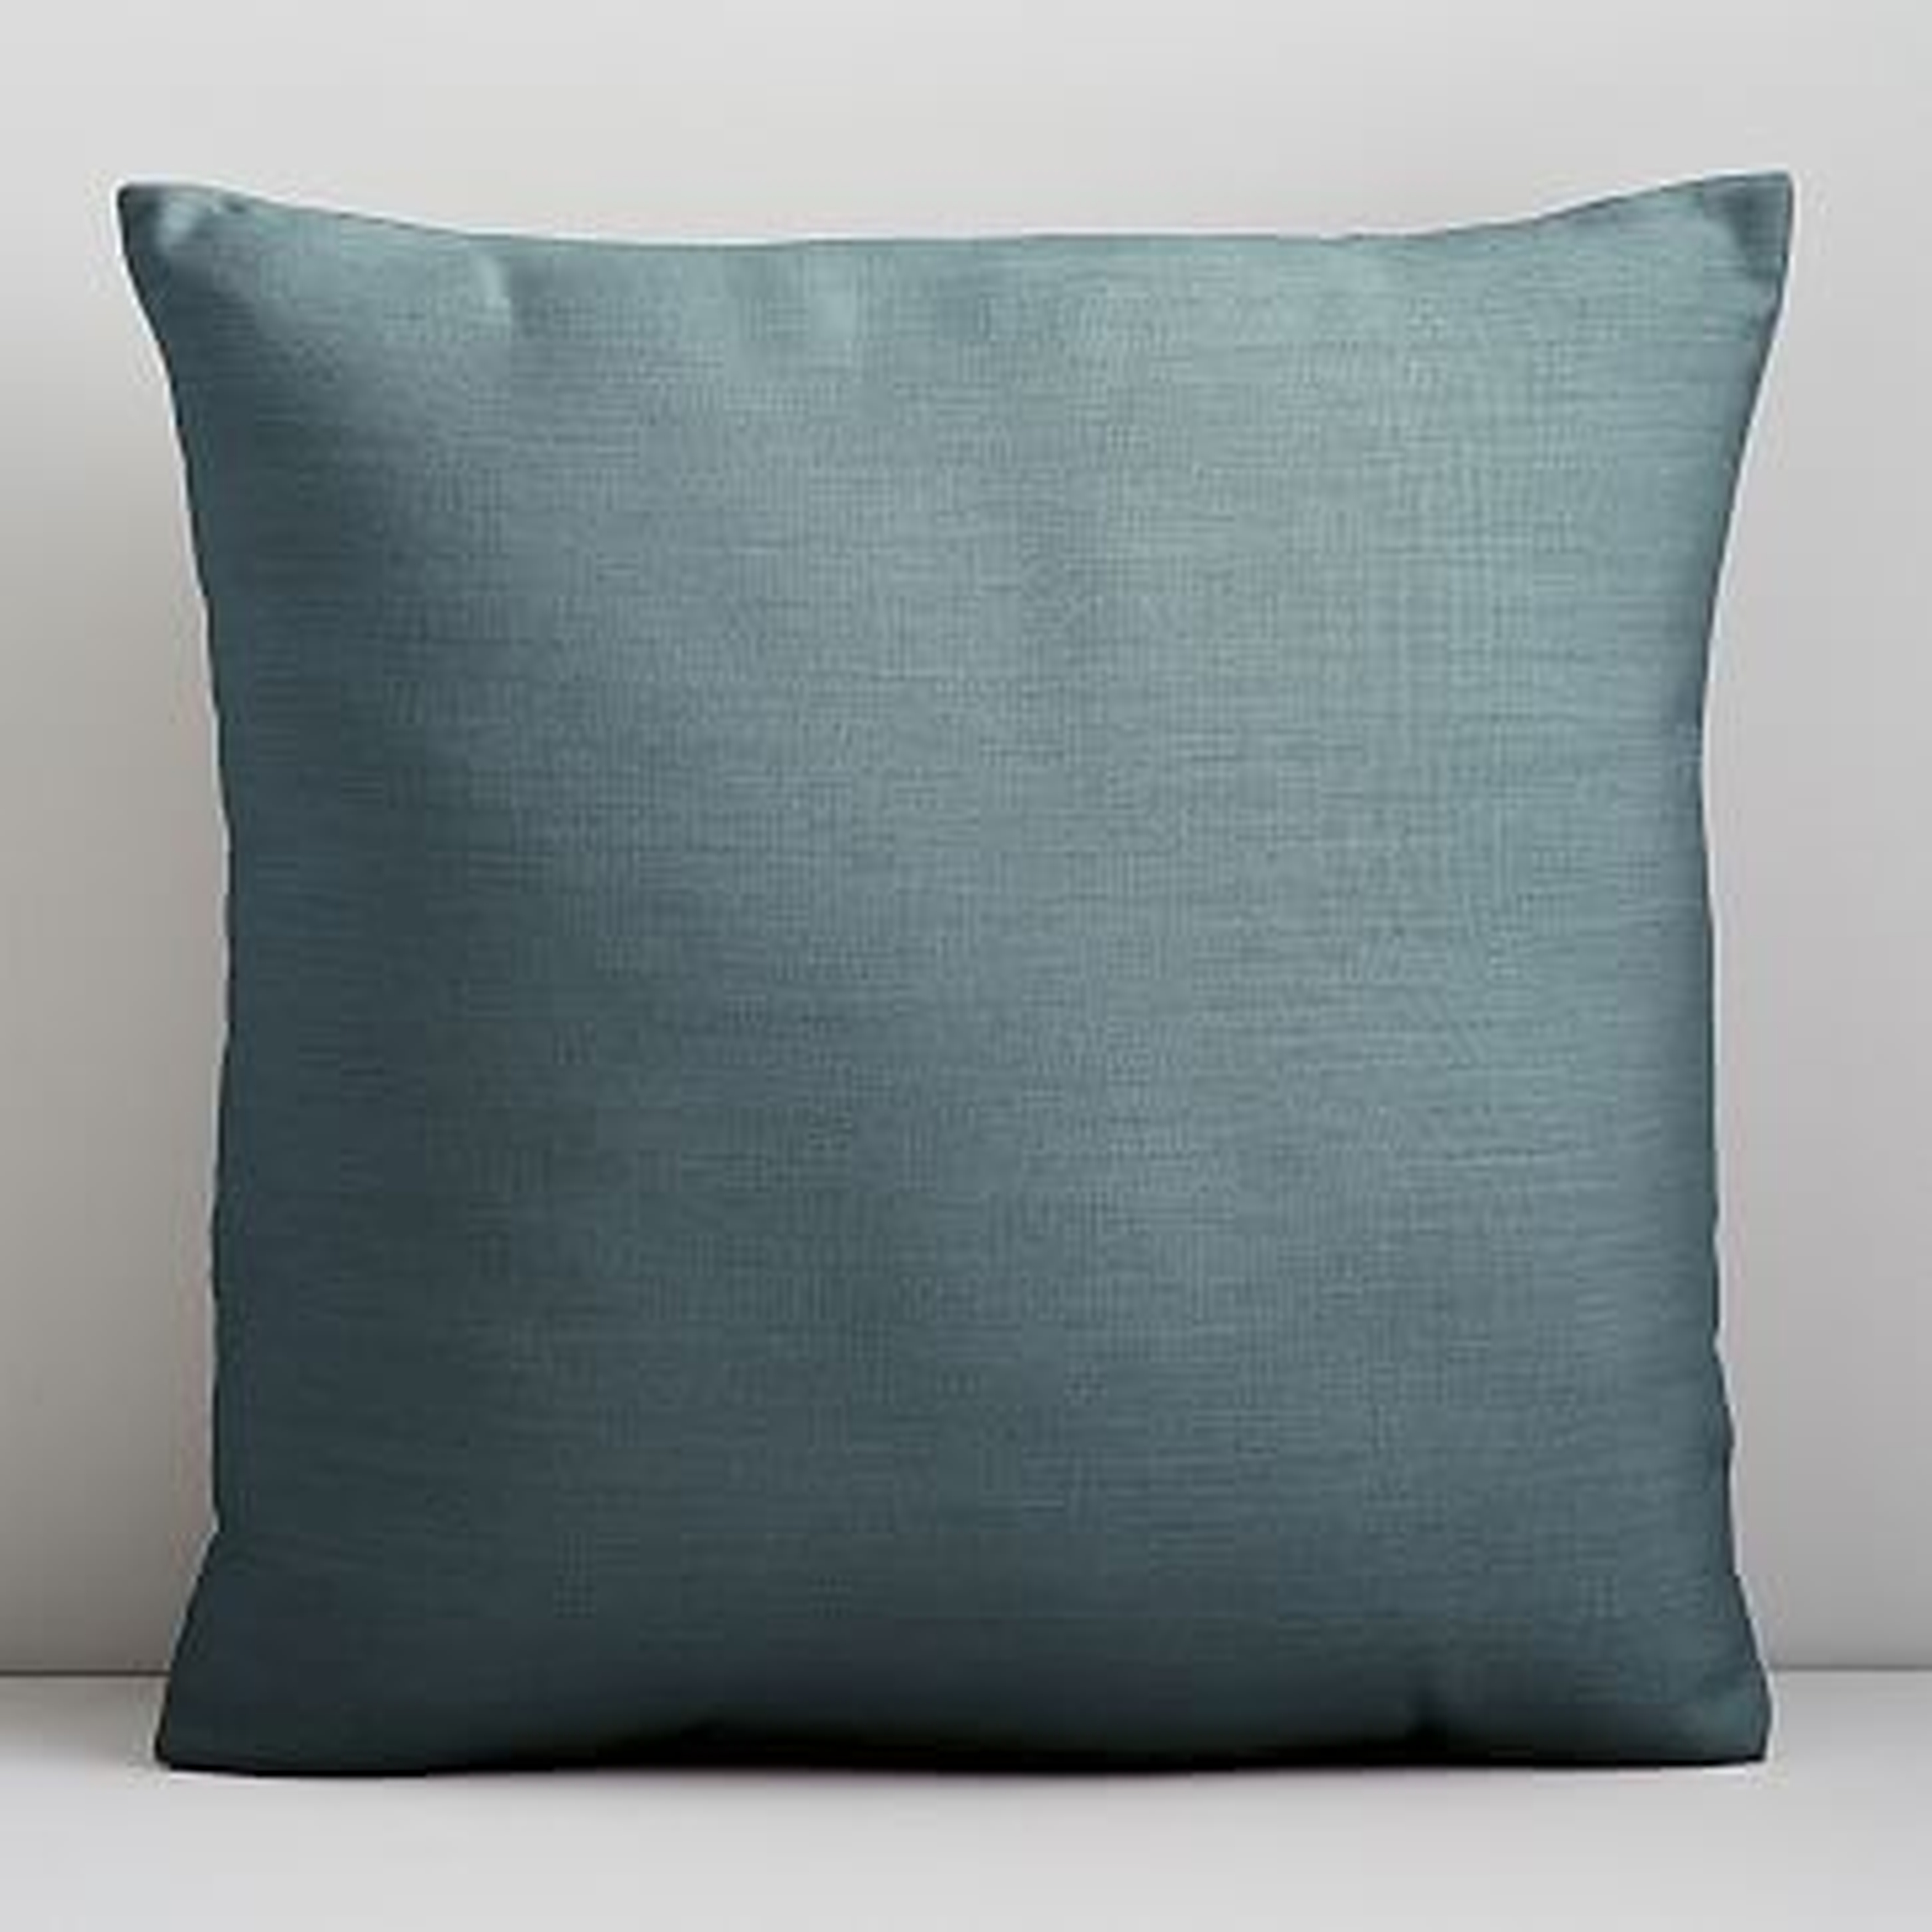 Sunbrella Indoor/Outdoor Cast Pillow, Set of 2, Lagoon, 18"x18" - West Elm